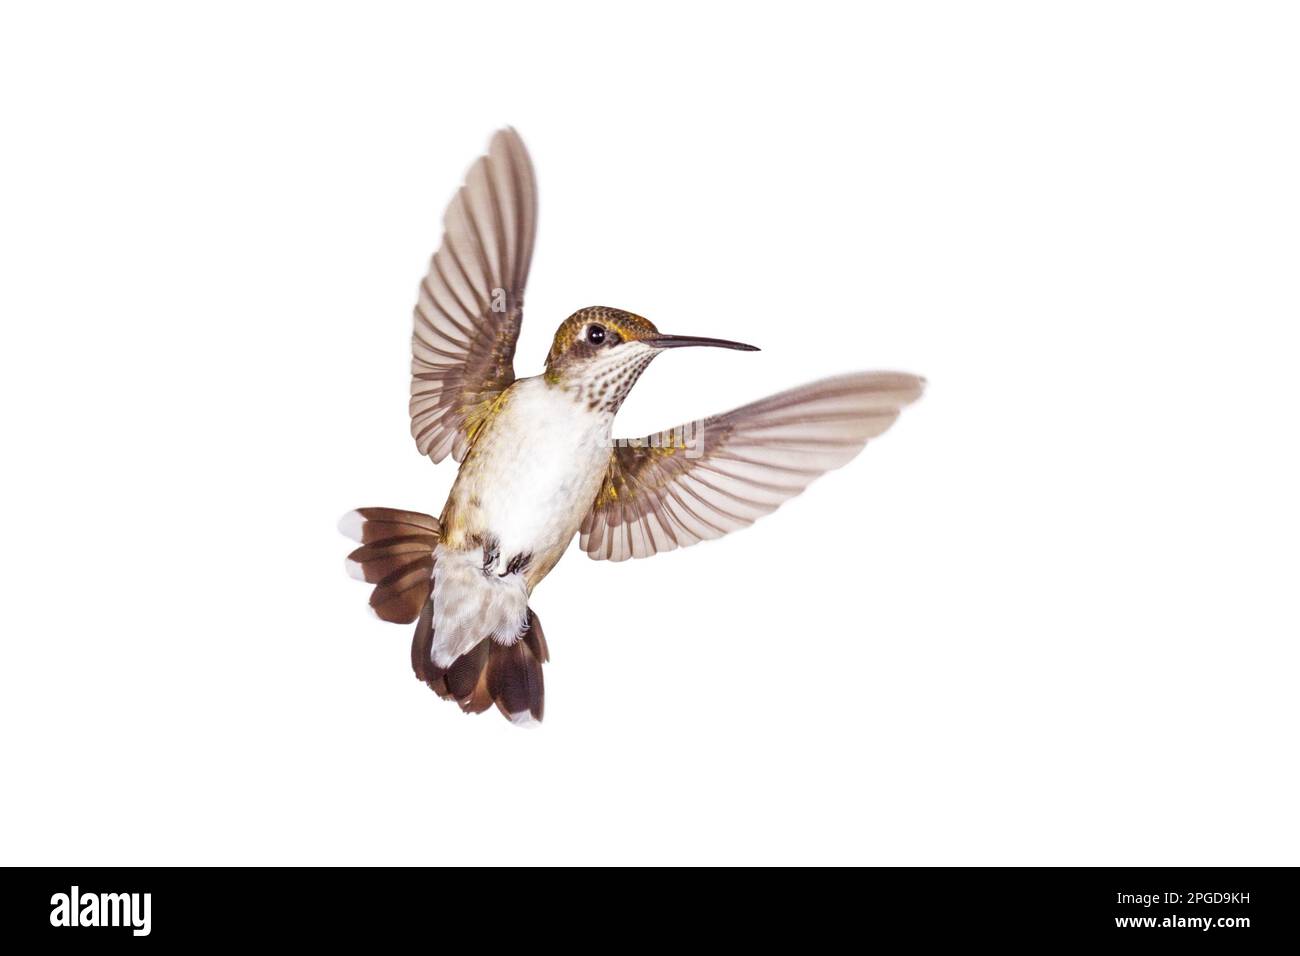 Un colibri avec est sa queue ouverte et les ailes se répandent, flotte comme un ange sur un fond blanc Banque D'Images